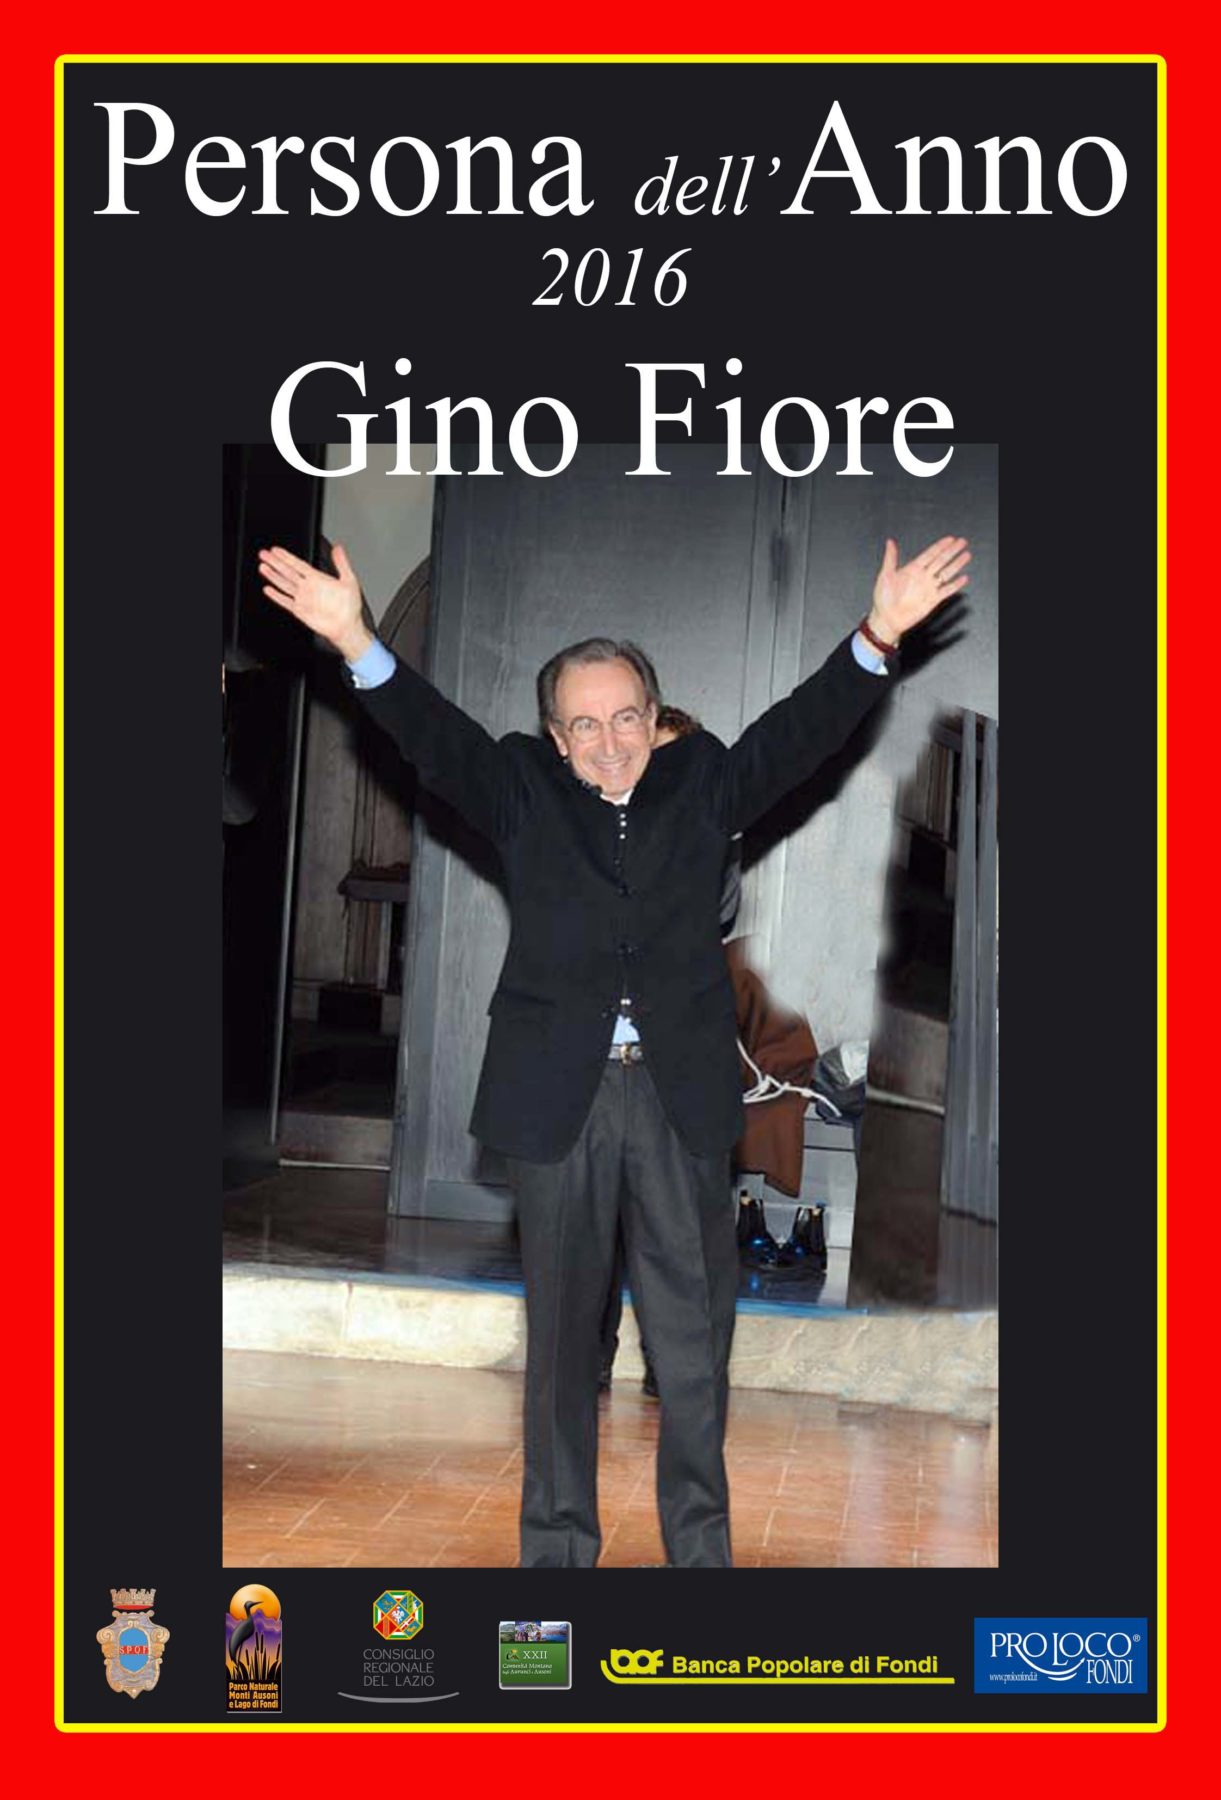 Proclamazione Gino Fiore persona dell'anno 2016